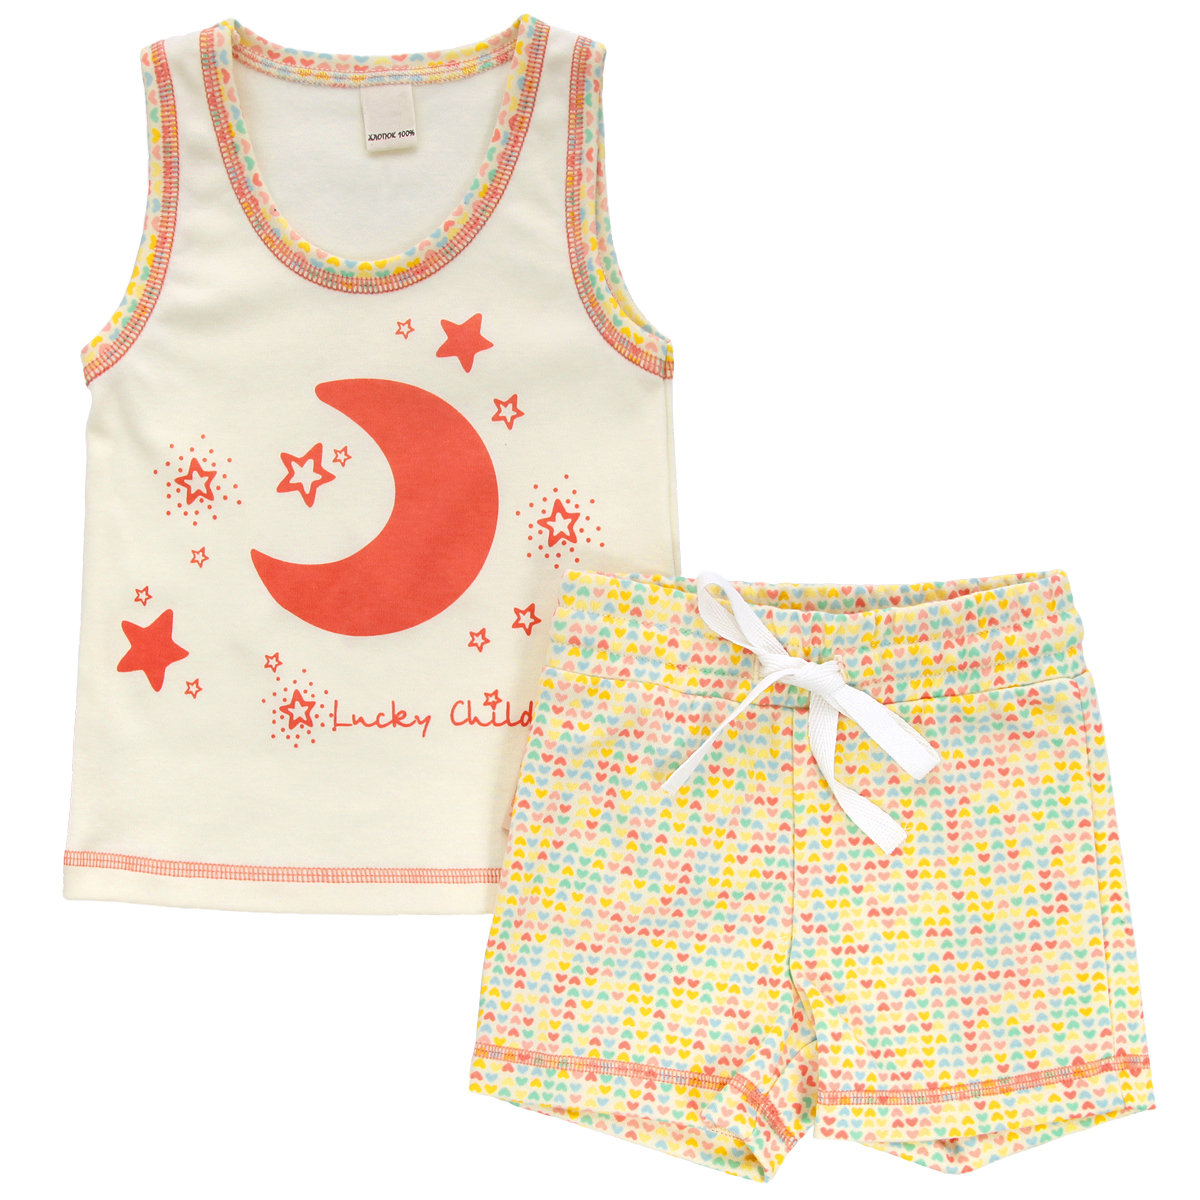 Комплект для девочки Lucky Child: майка, шорты, цвет: кремовый, желтый, оранжевый. 12-410. Размер 110/116